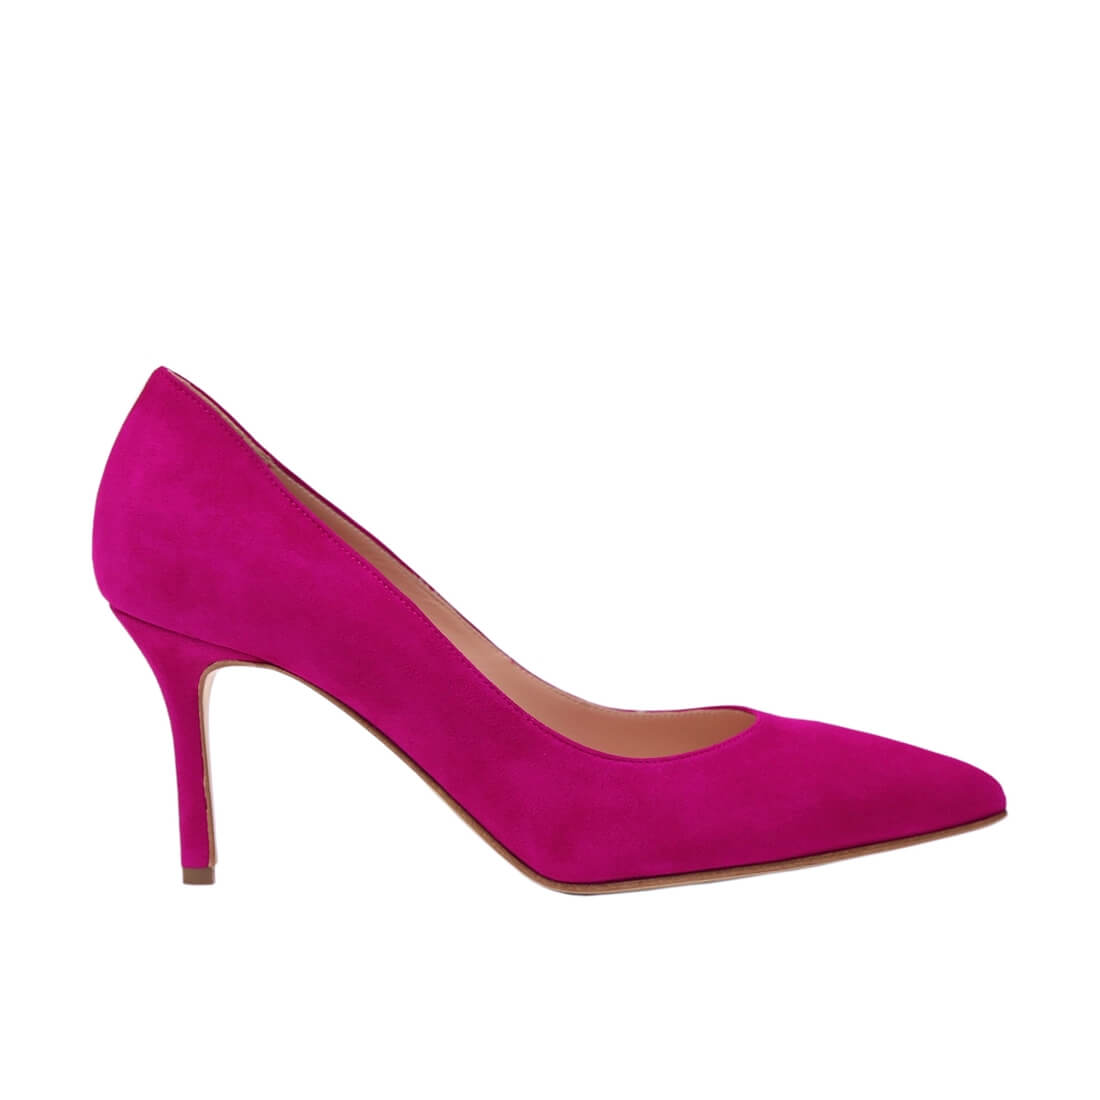 Pastel Pink Pumps – GENA Adjustable Heels